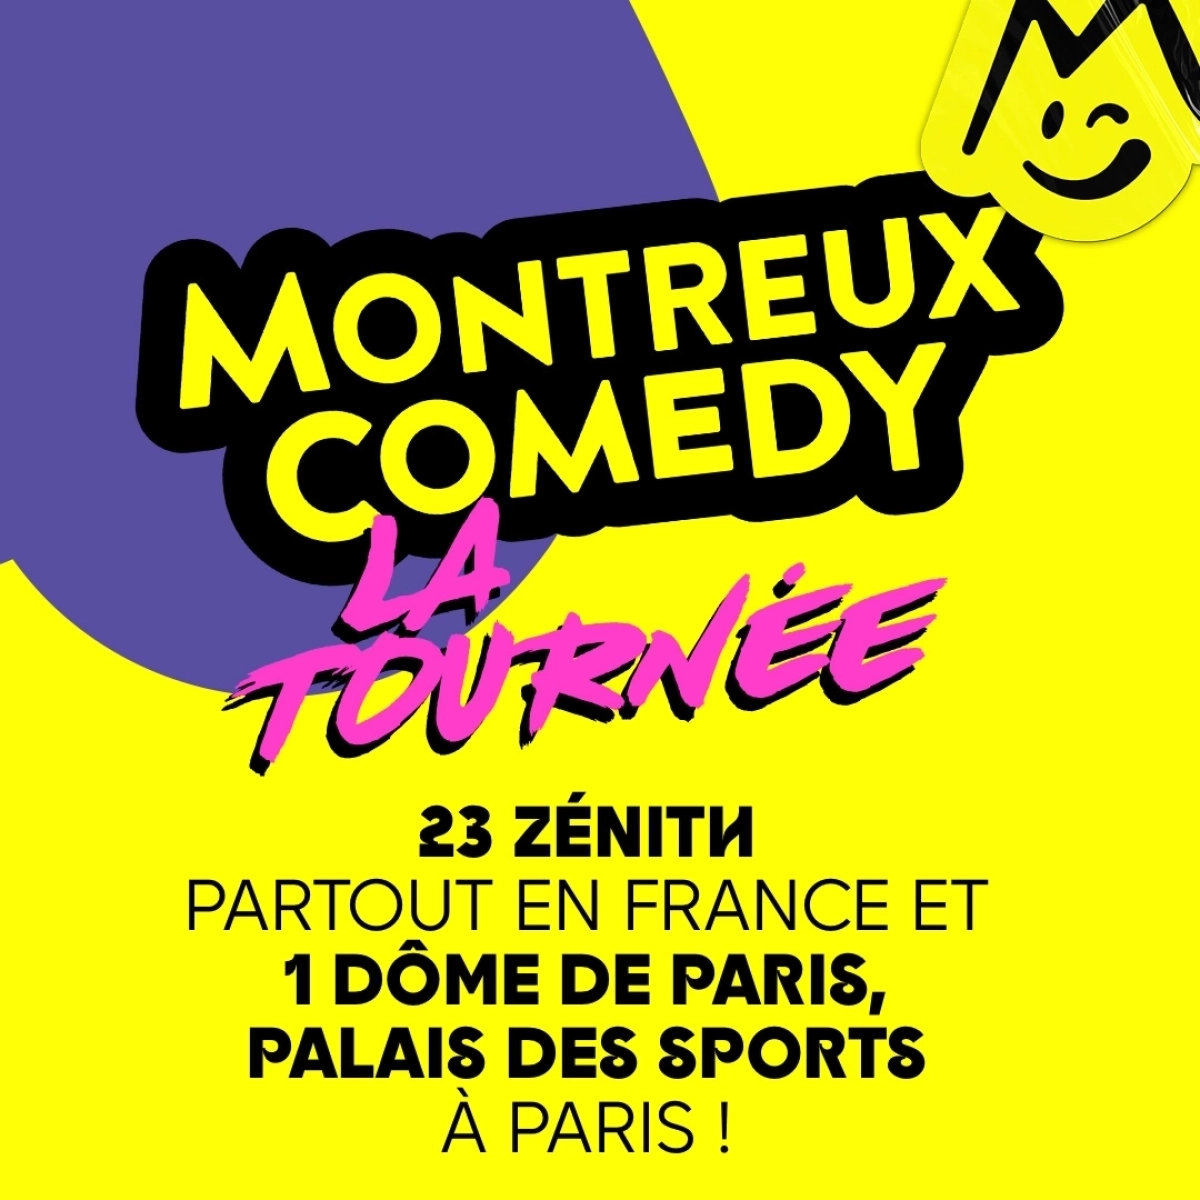 Montreux Comedy - La Tournée in der Zenith Lille Tickets